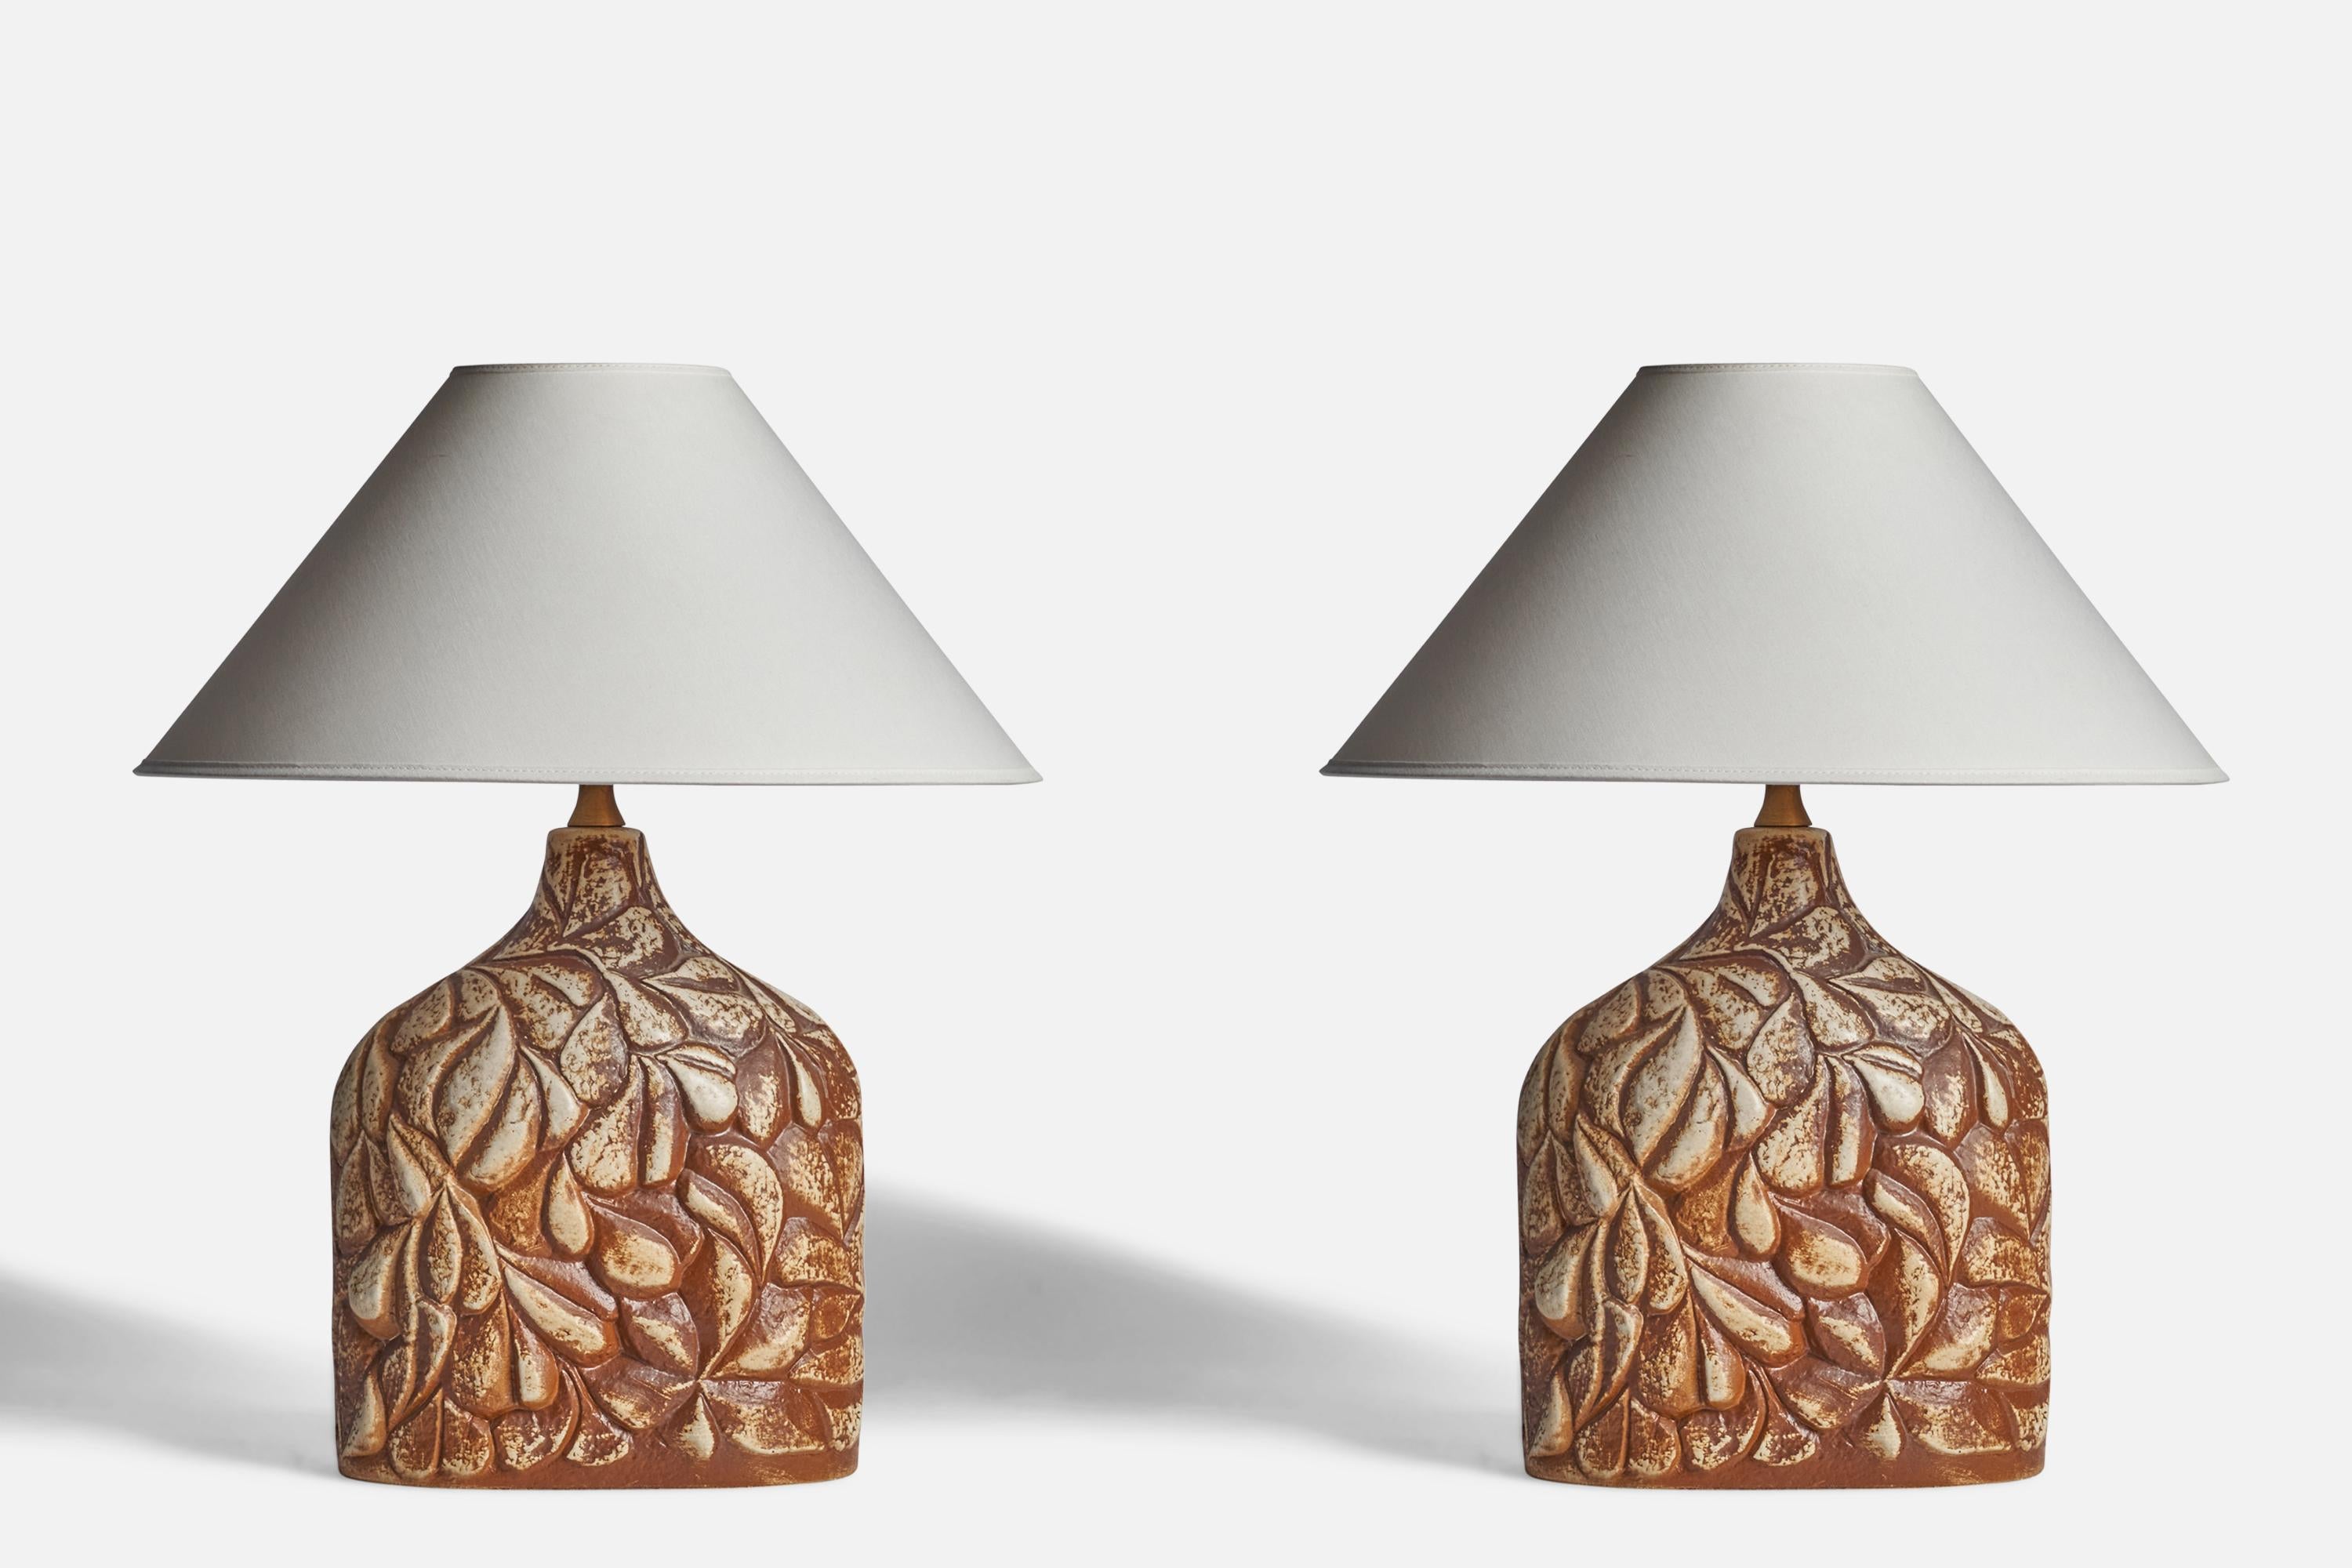 Paire de lampes de table en grès émaillé gris et brun, conçues par Haico Neitchze et produites par Søholm, Danemark, années 1960.

Dimensions de la lampe (pouces) : 15.5